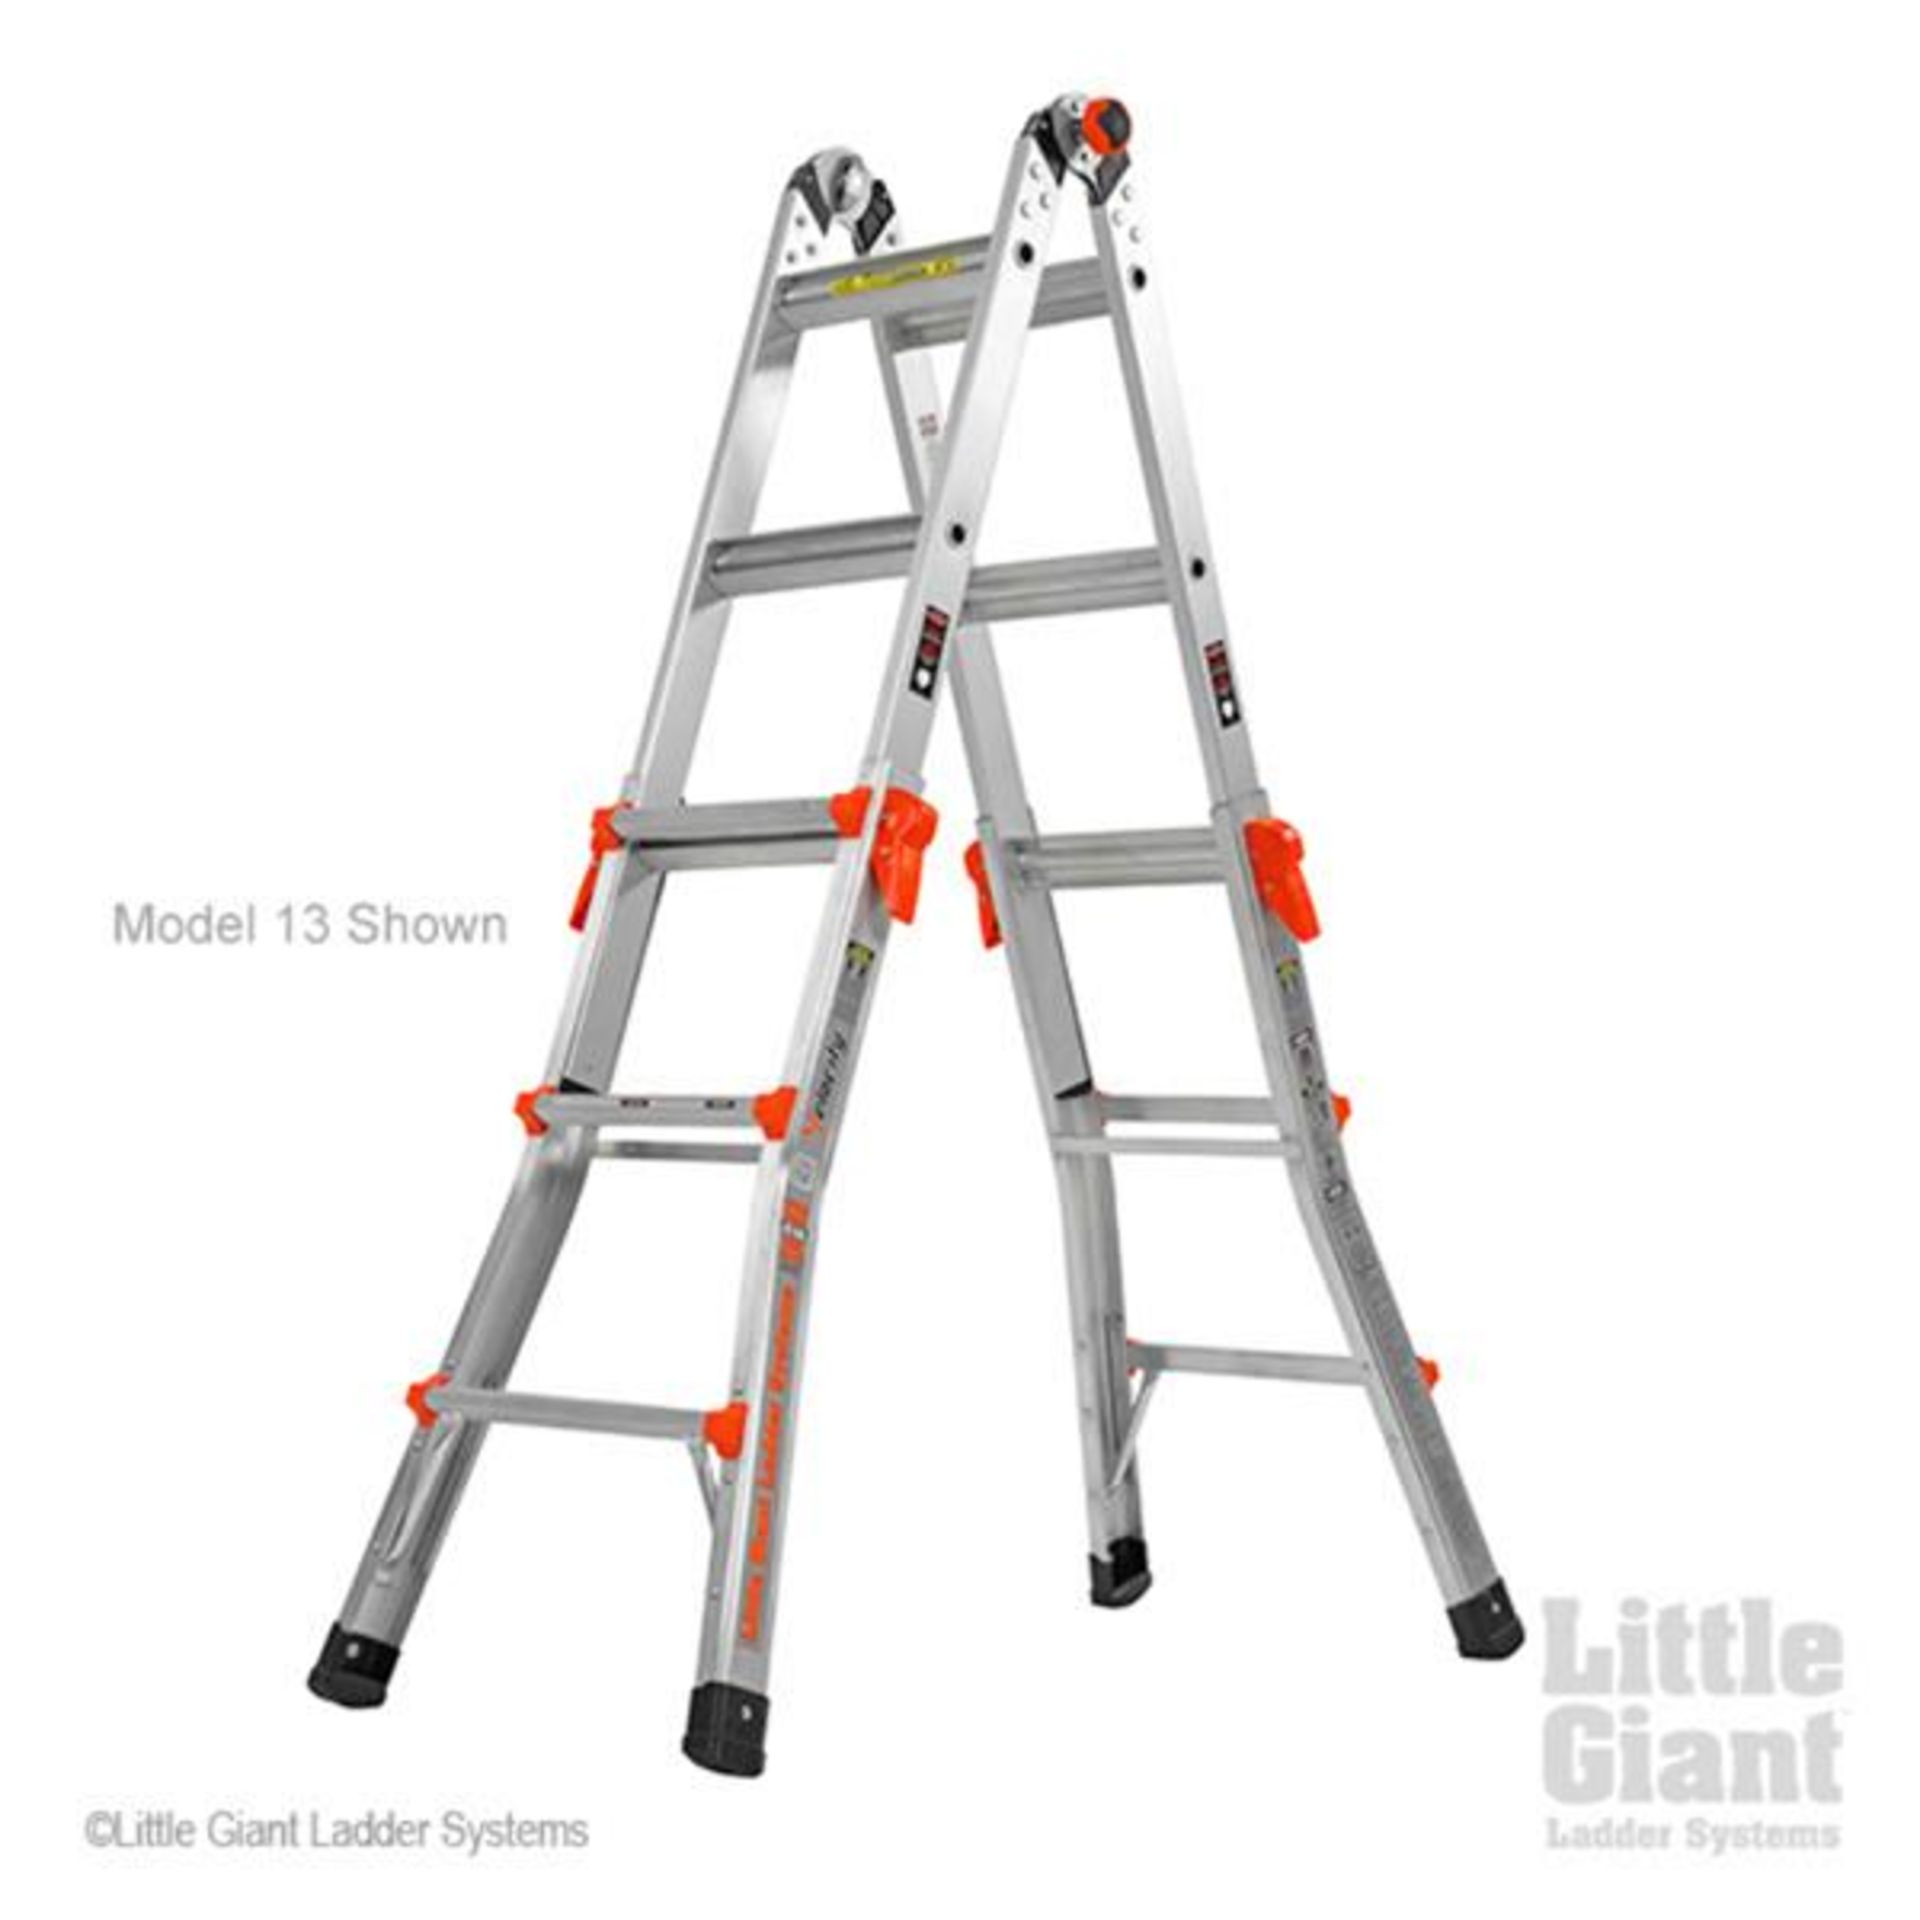 1 x Little Giant 4 Step Multipurpose Velocity Ladder - Type 15417EN - Ref: JP909 GITW - CL732 - - Image 14 of 15